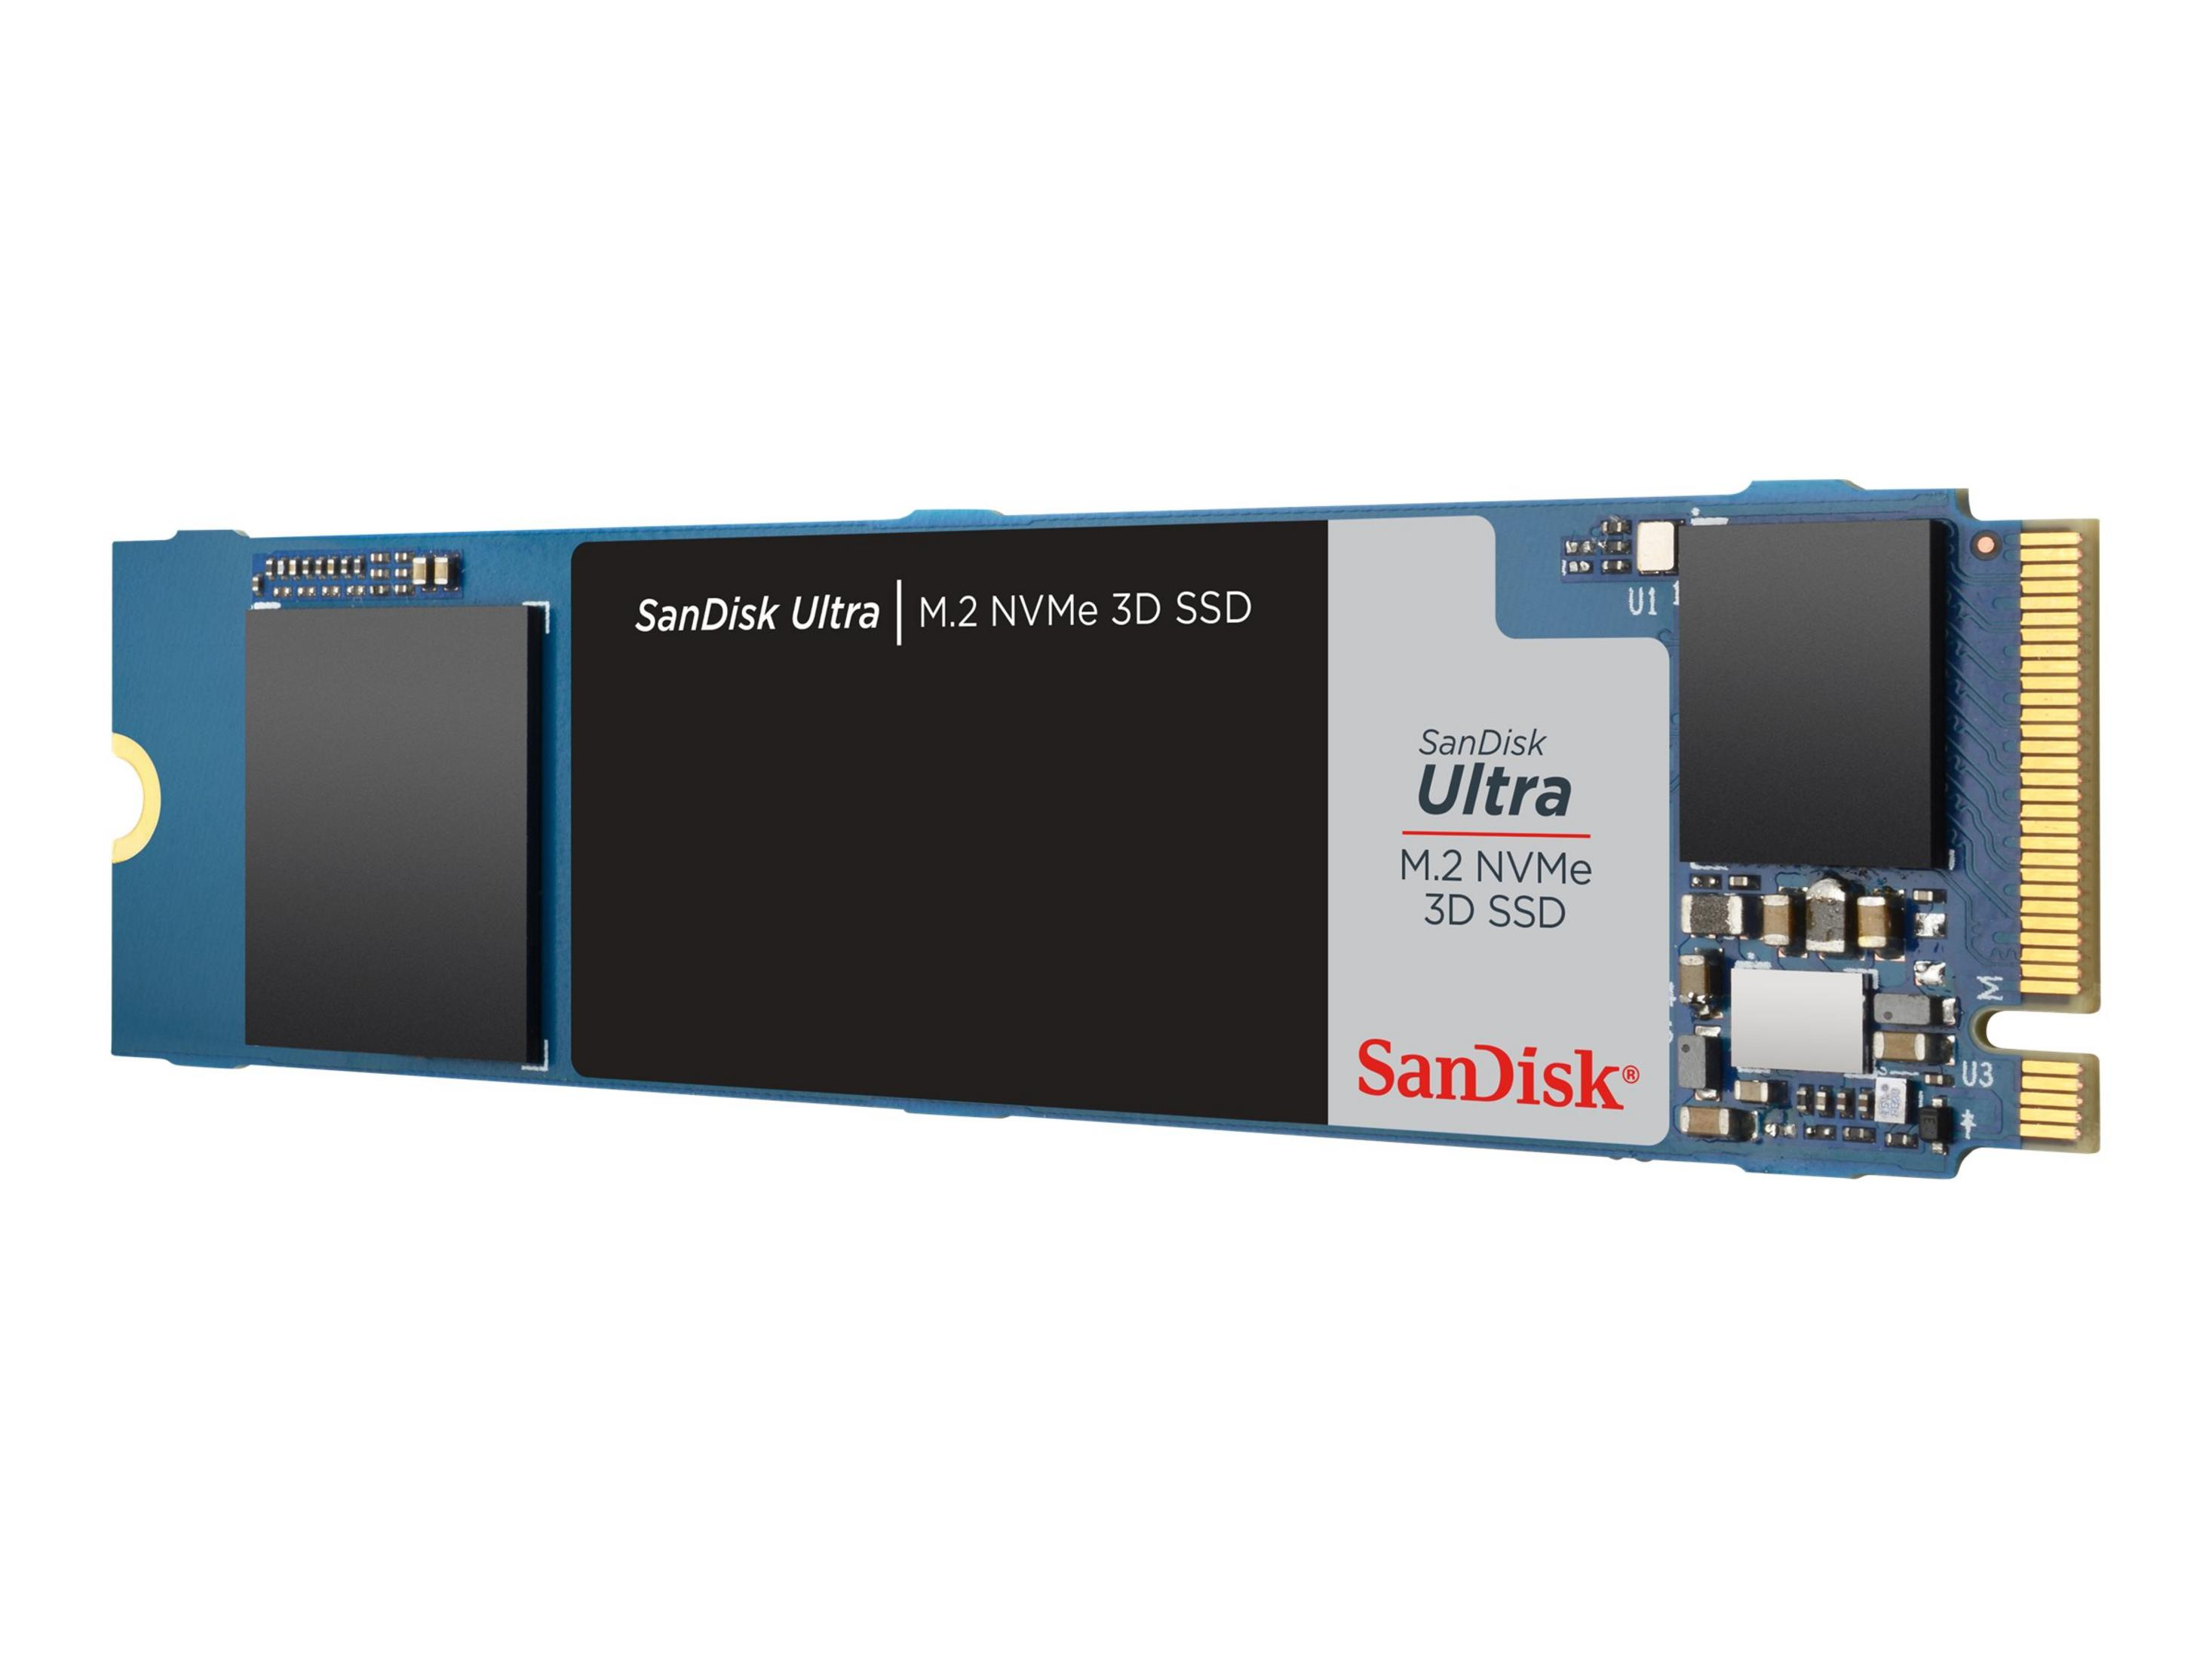 Interner 3D NVME SANDISK SDSSDH3N-500G-G26 Speicher, 500GB, 500 intern GB, ULTRA